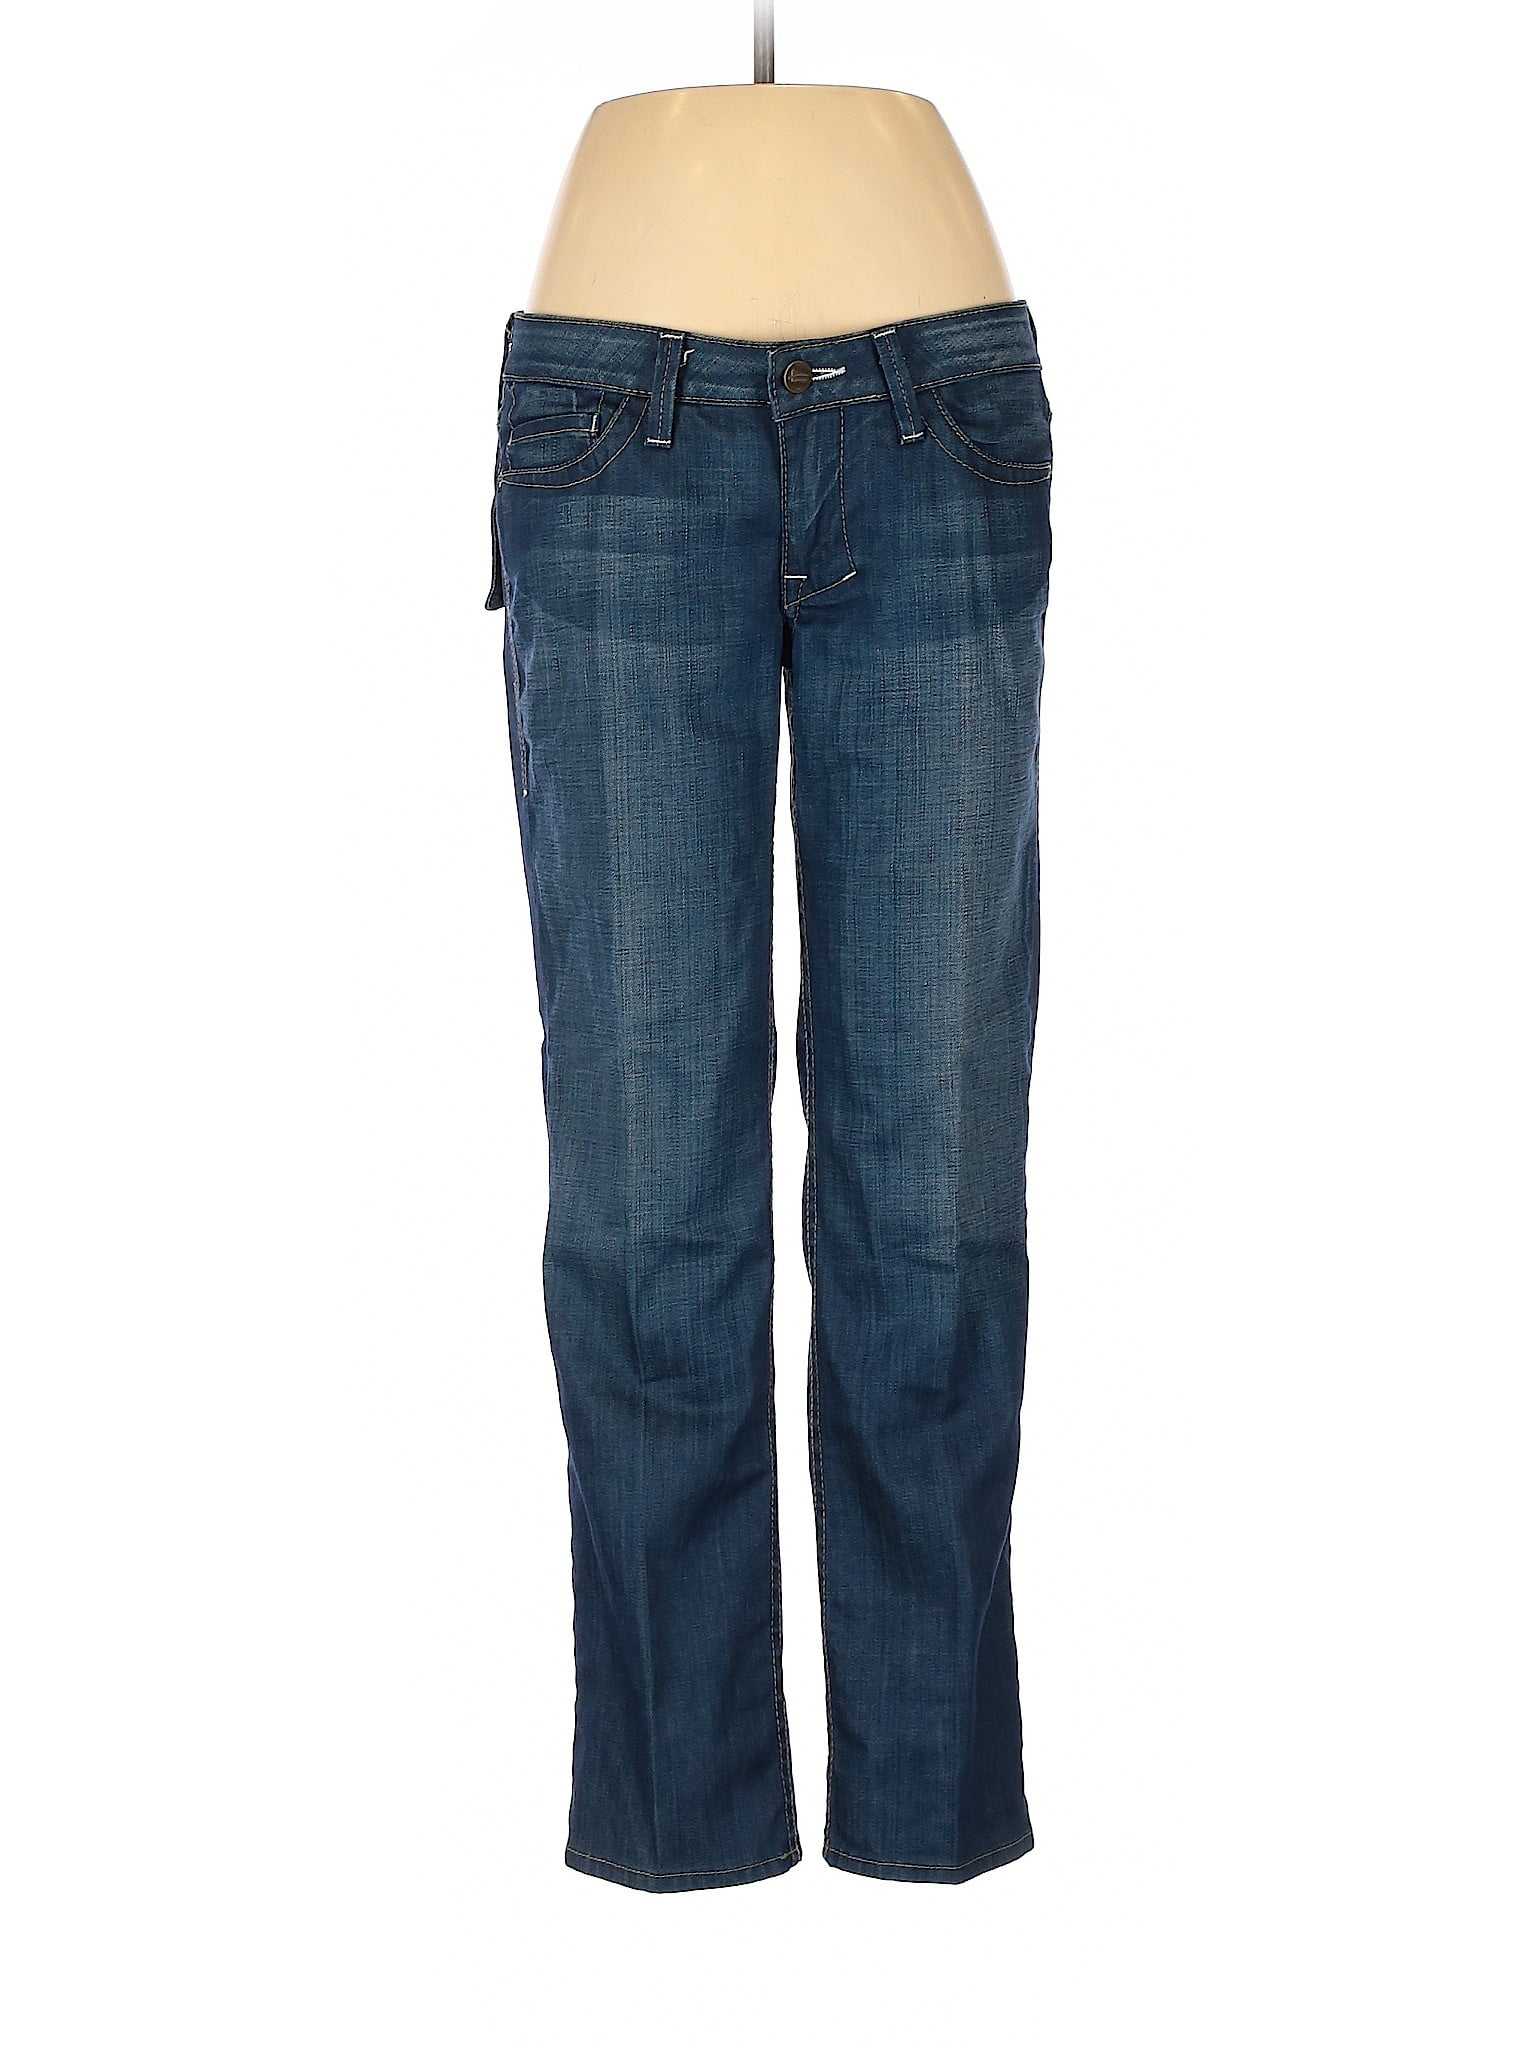 William Rast - Pre-Owned William Rast Women's Size 29W Jeans - Walmart ...